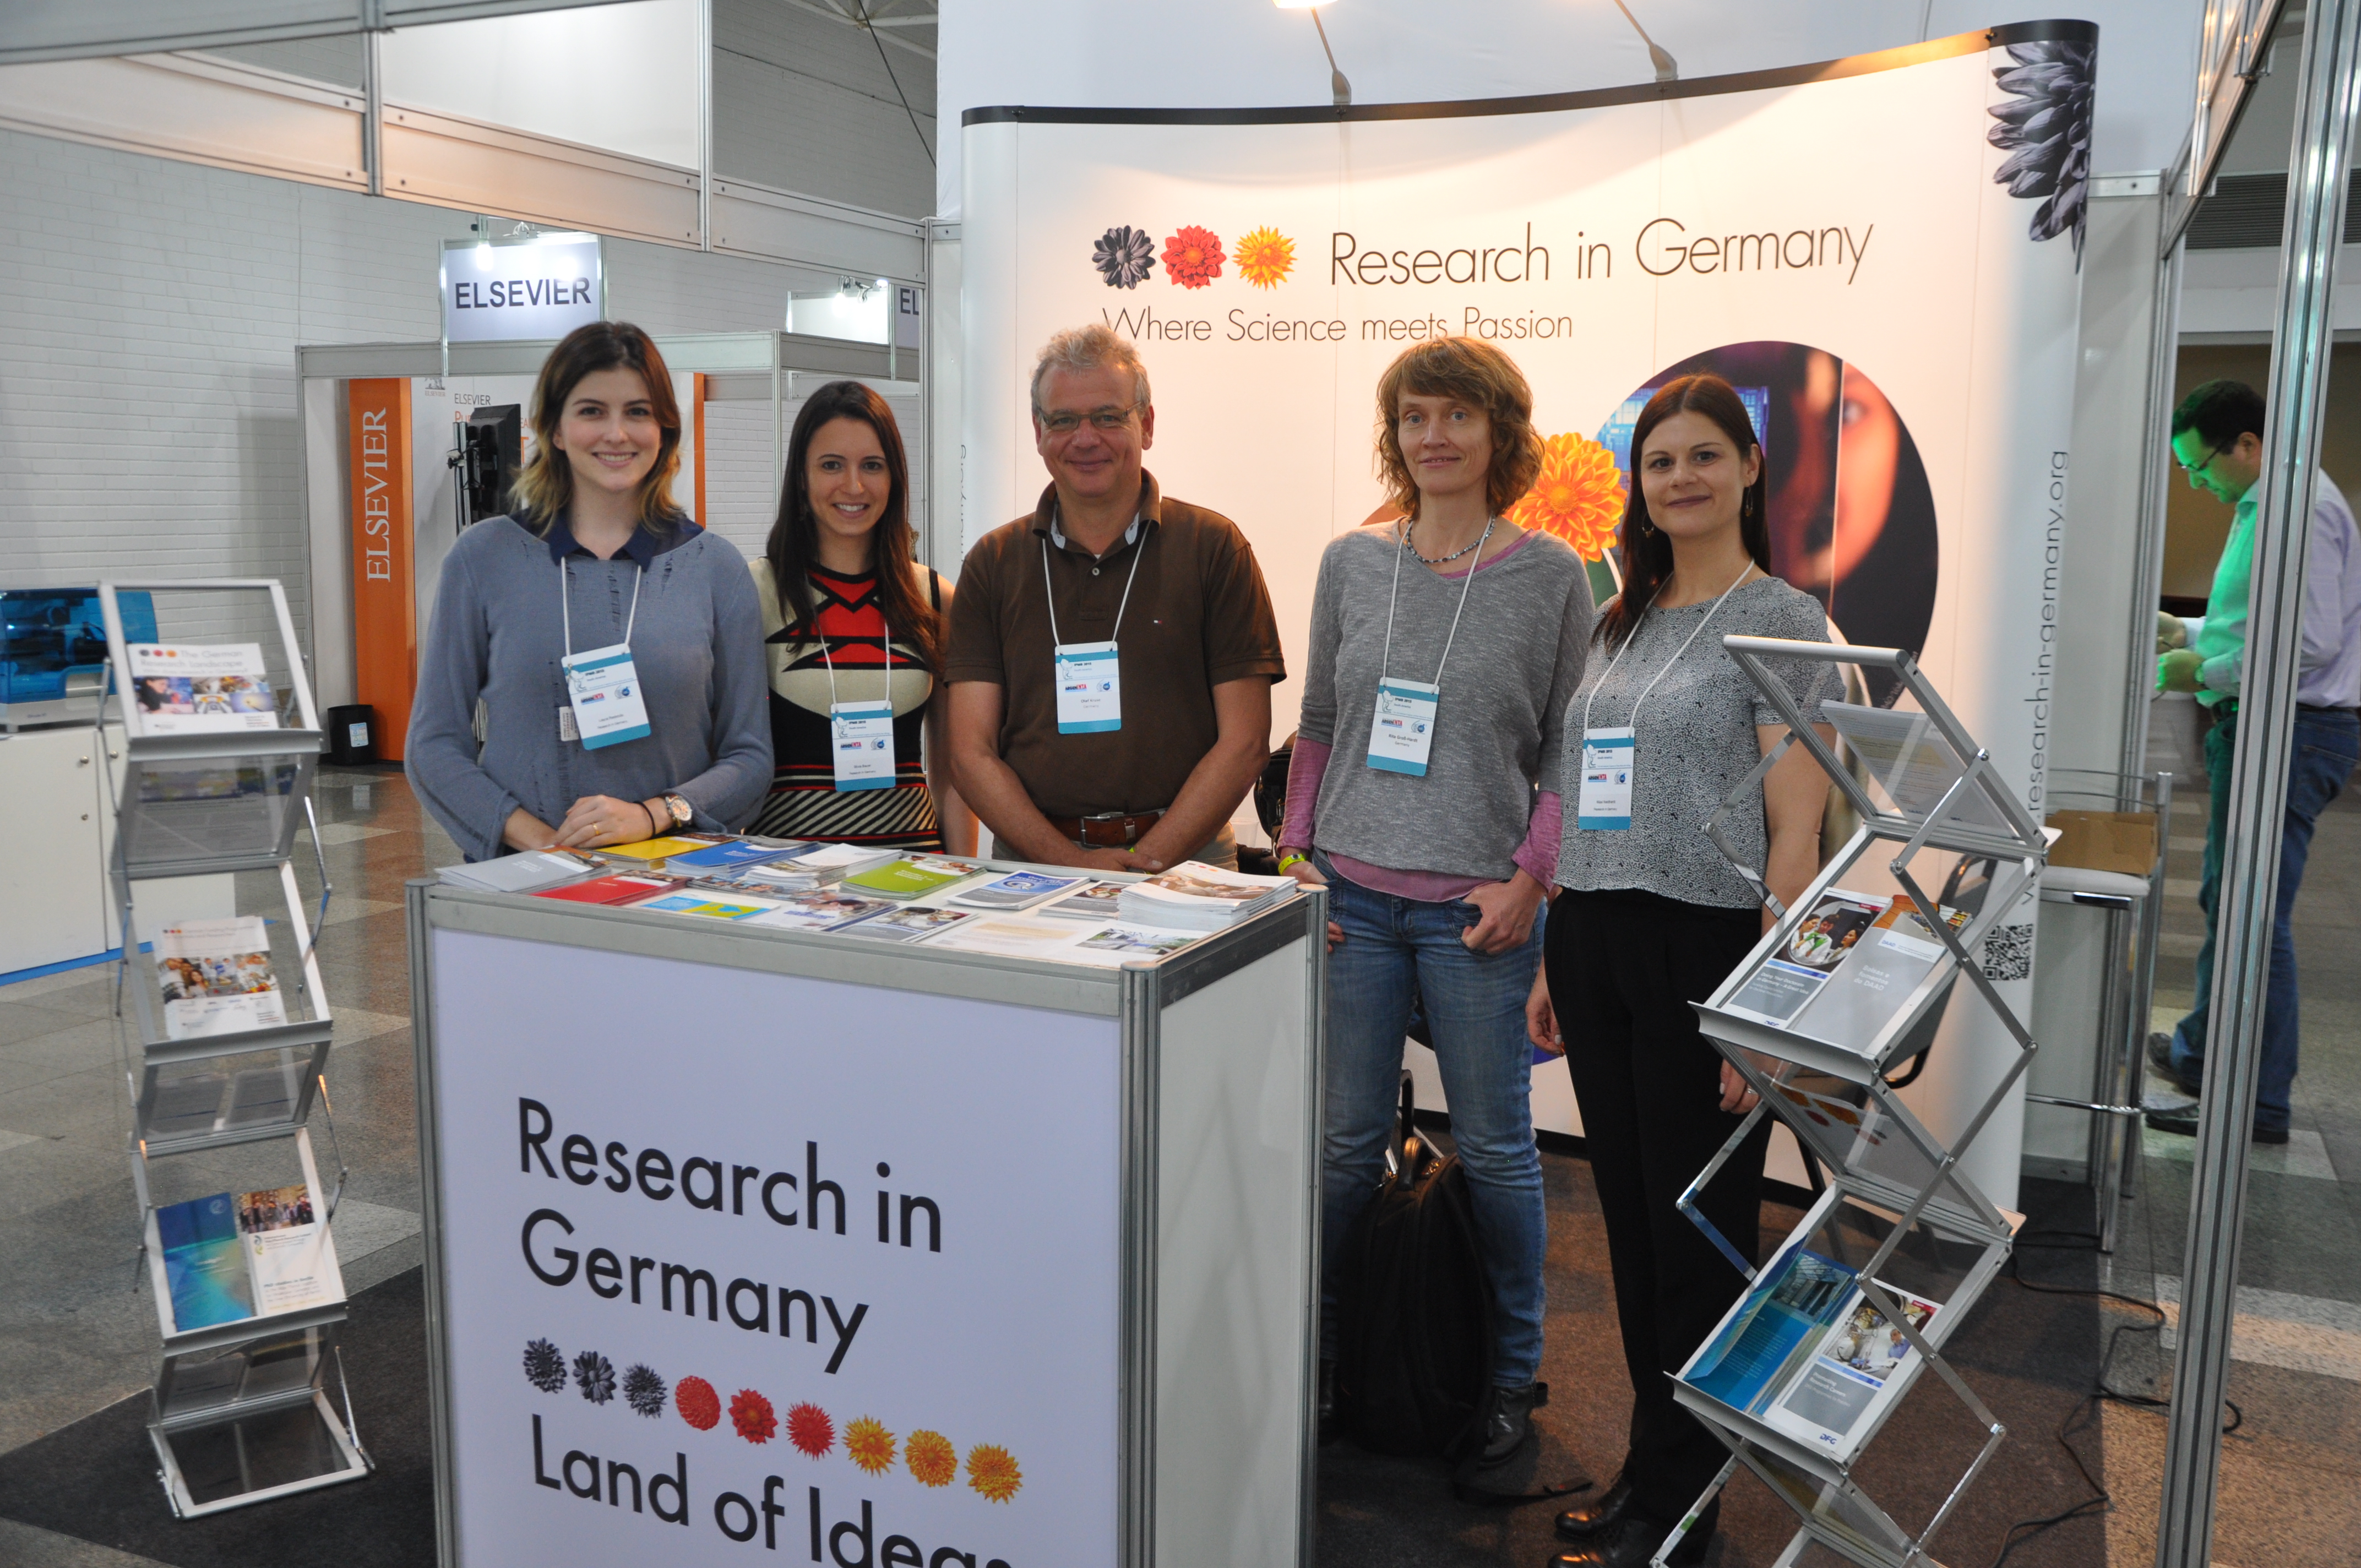 Am Stand von „Research in Germany“, Von links nach rechts: Laura Redondo, Silvia Bauer, Professor Dr. Olaf Kruse, Professor Dr. Rita Groß-Hardt und Maxi Neidhardt